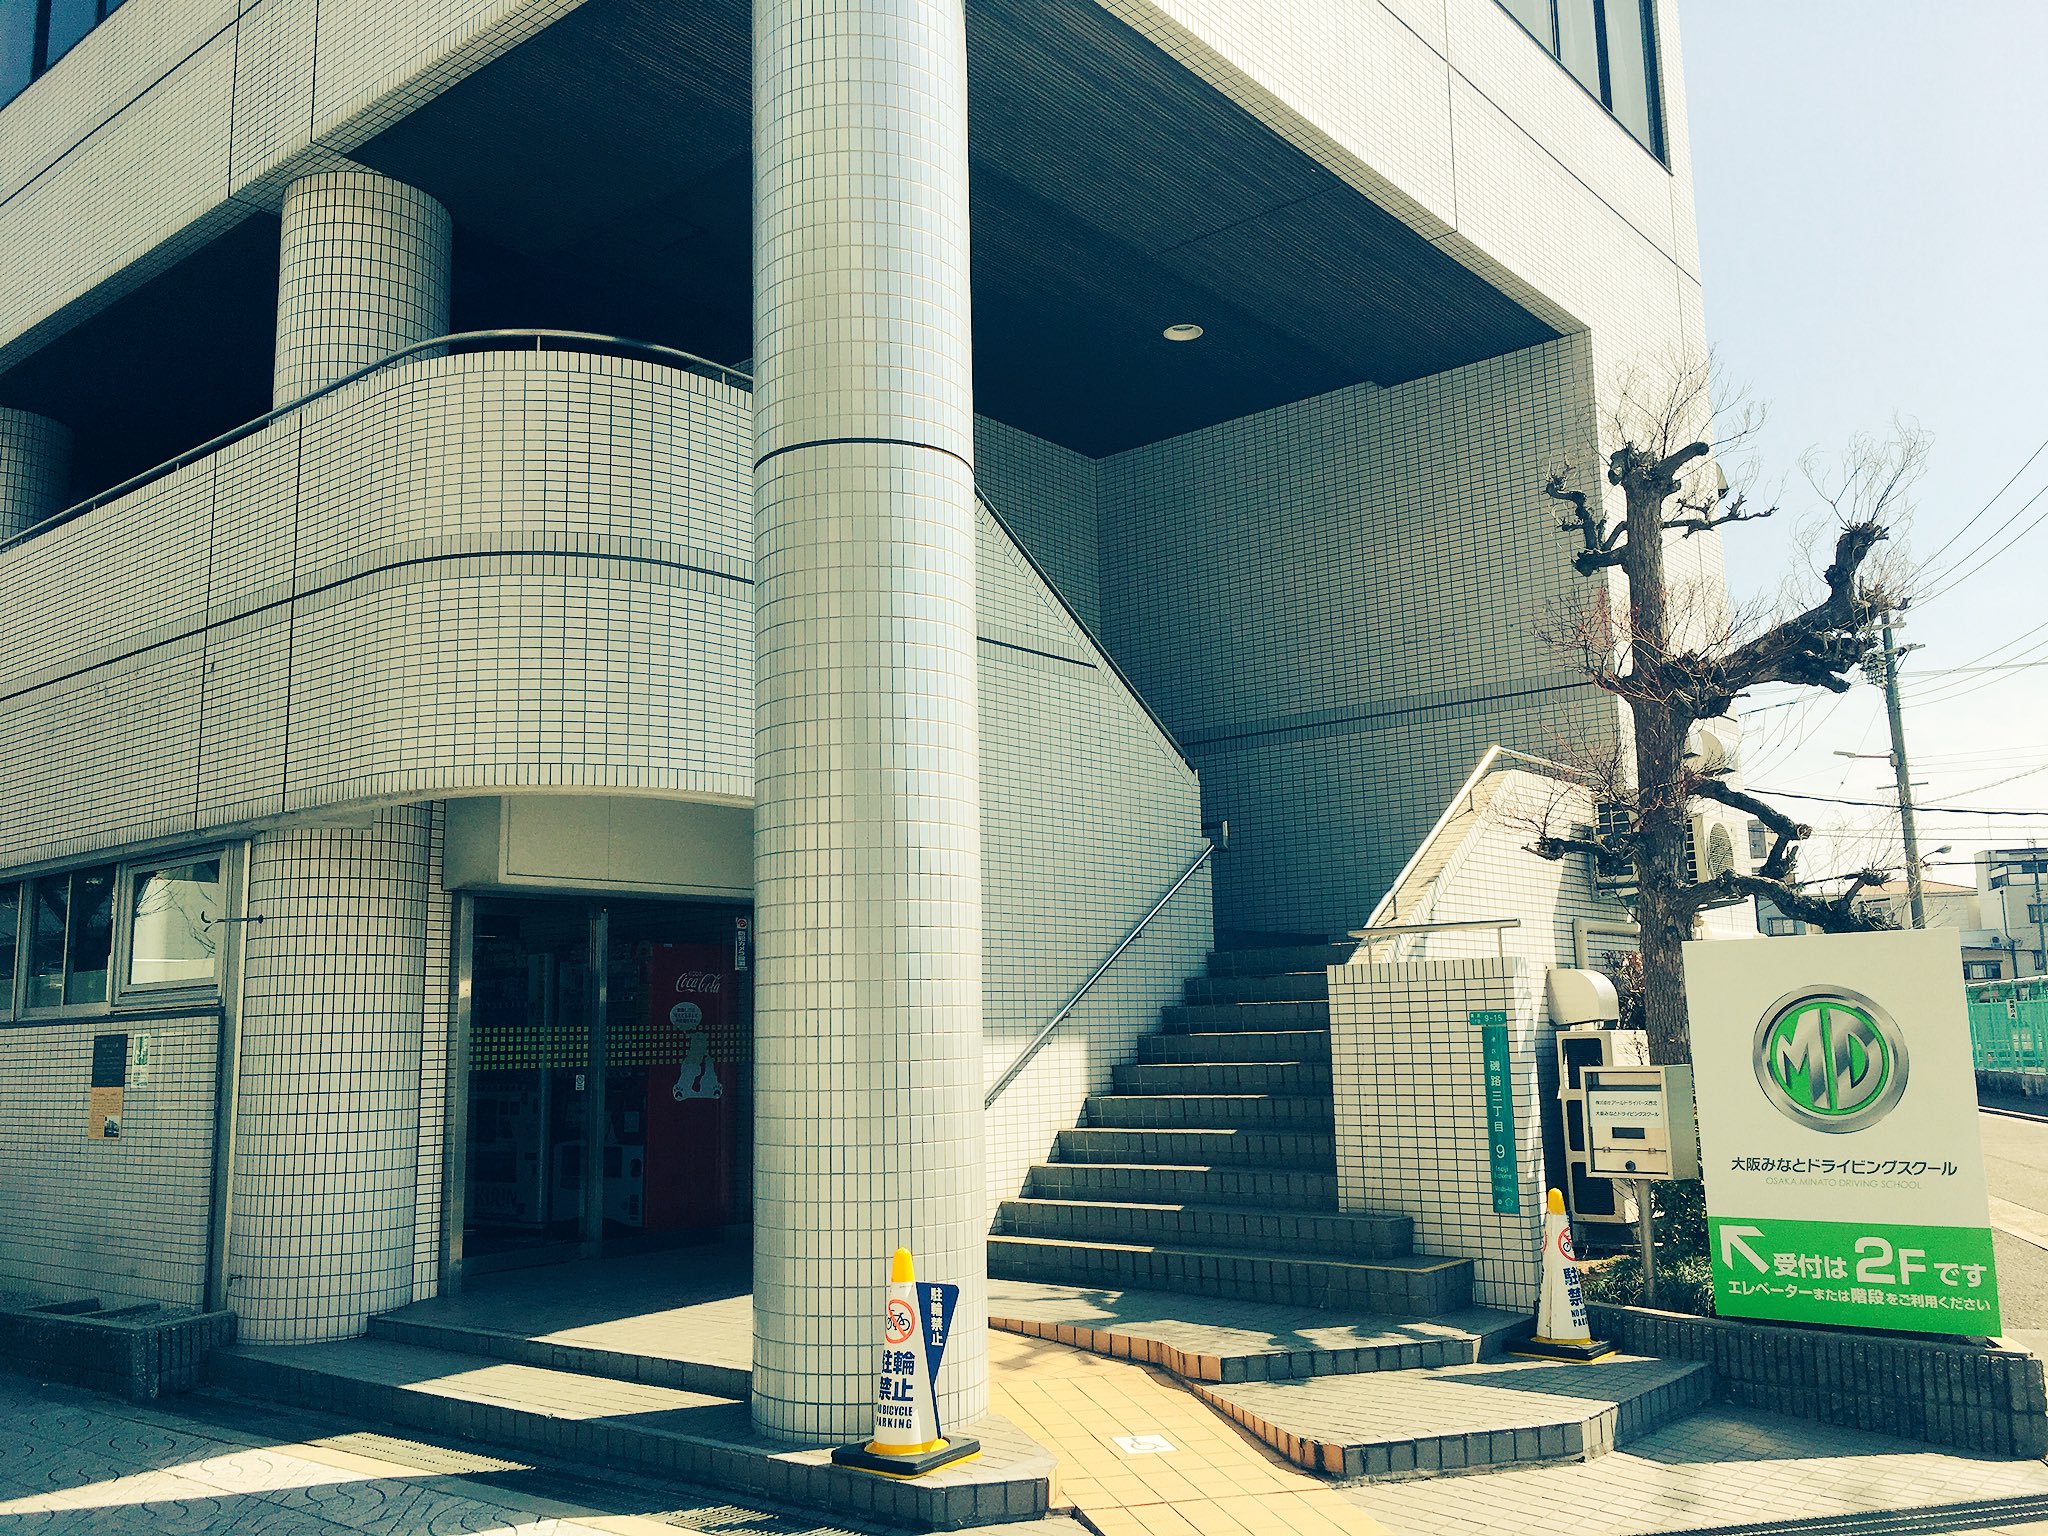 ドライビング スクール みなと 大阪 大阪市港区の近くの合宿免許・自動車学校！最短で一番安い入学方法を解説